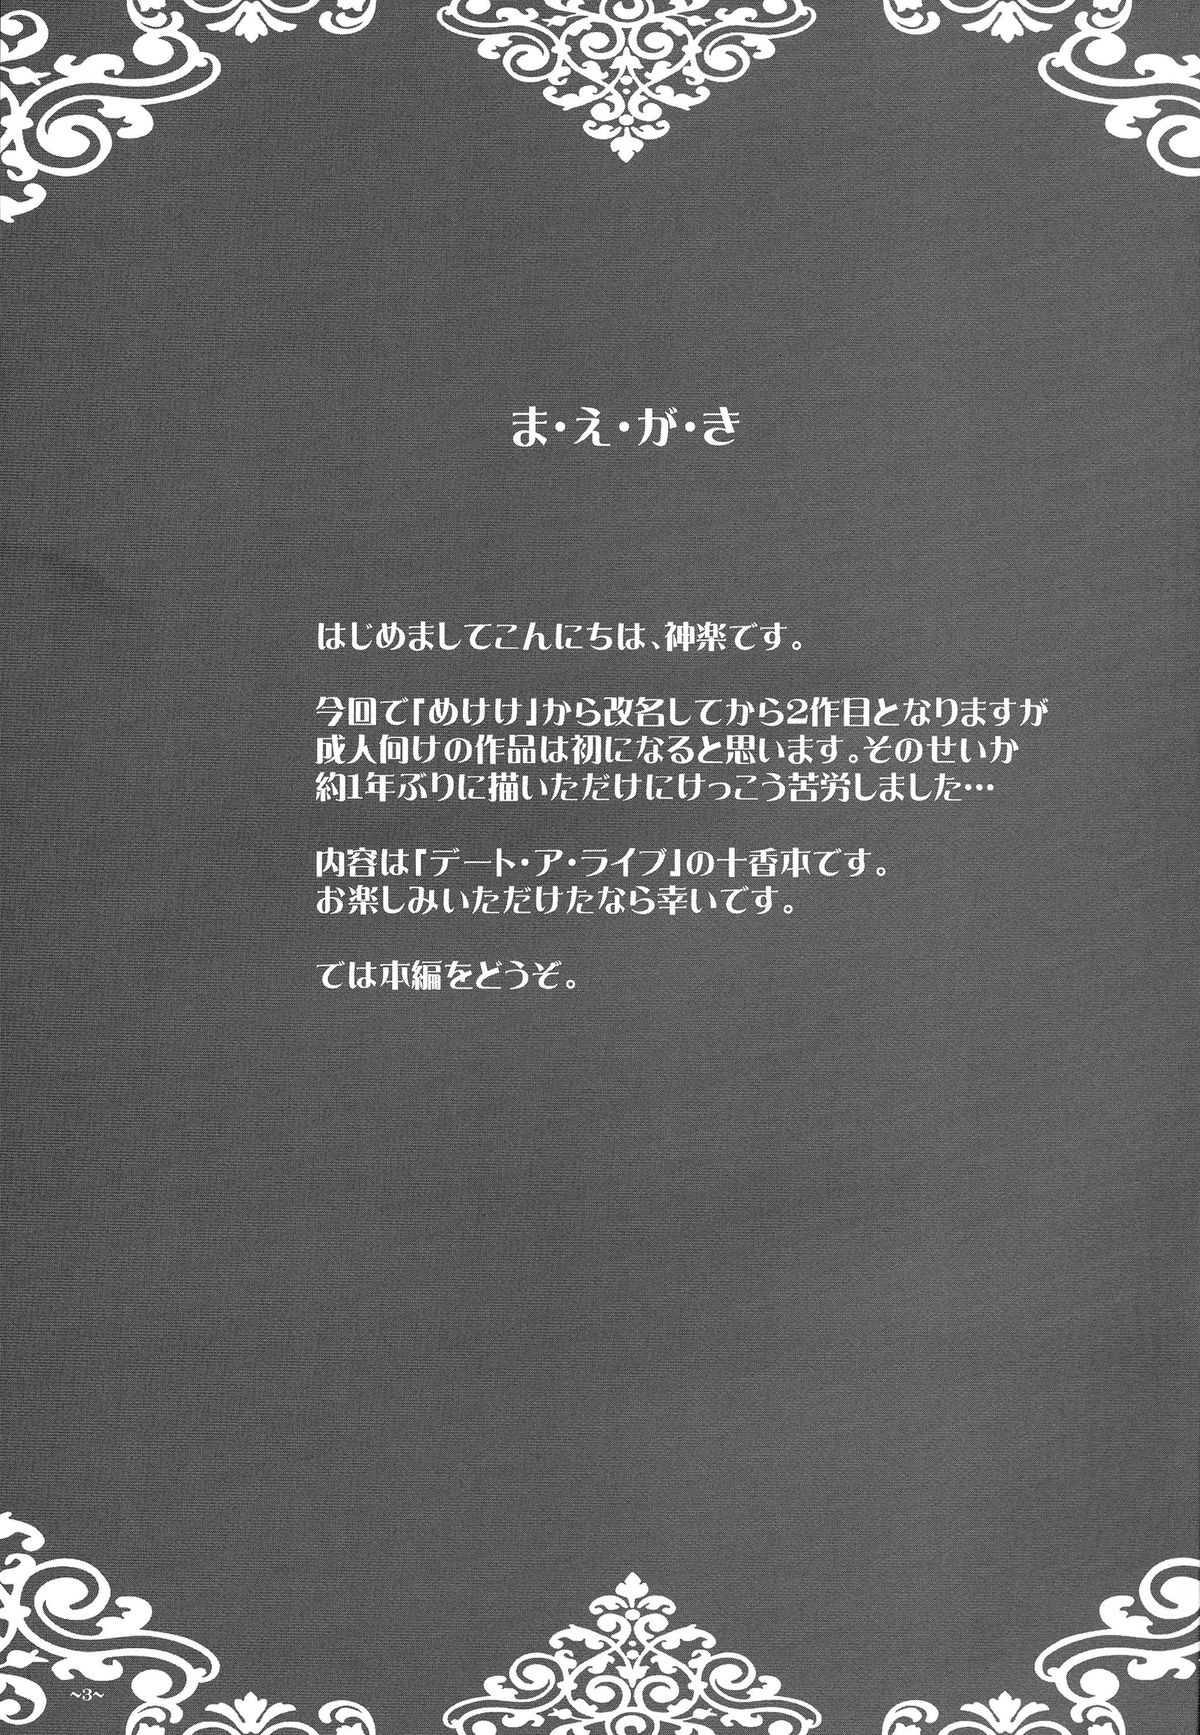 (コミトレ24) [カツオ武士 (神楽一刀)] EUPHORIA VOL.3 (デート・ア・ライブ)